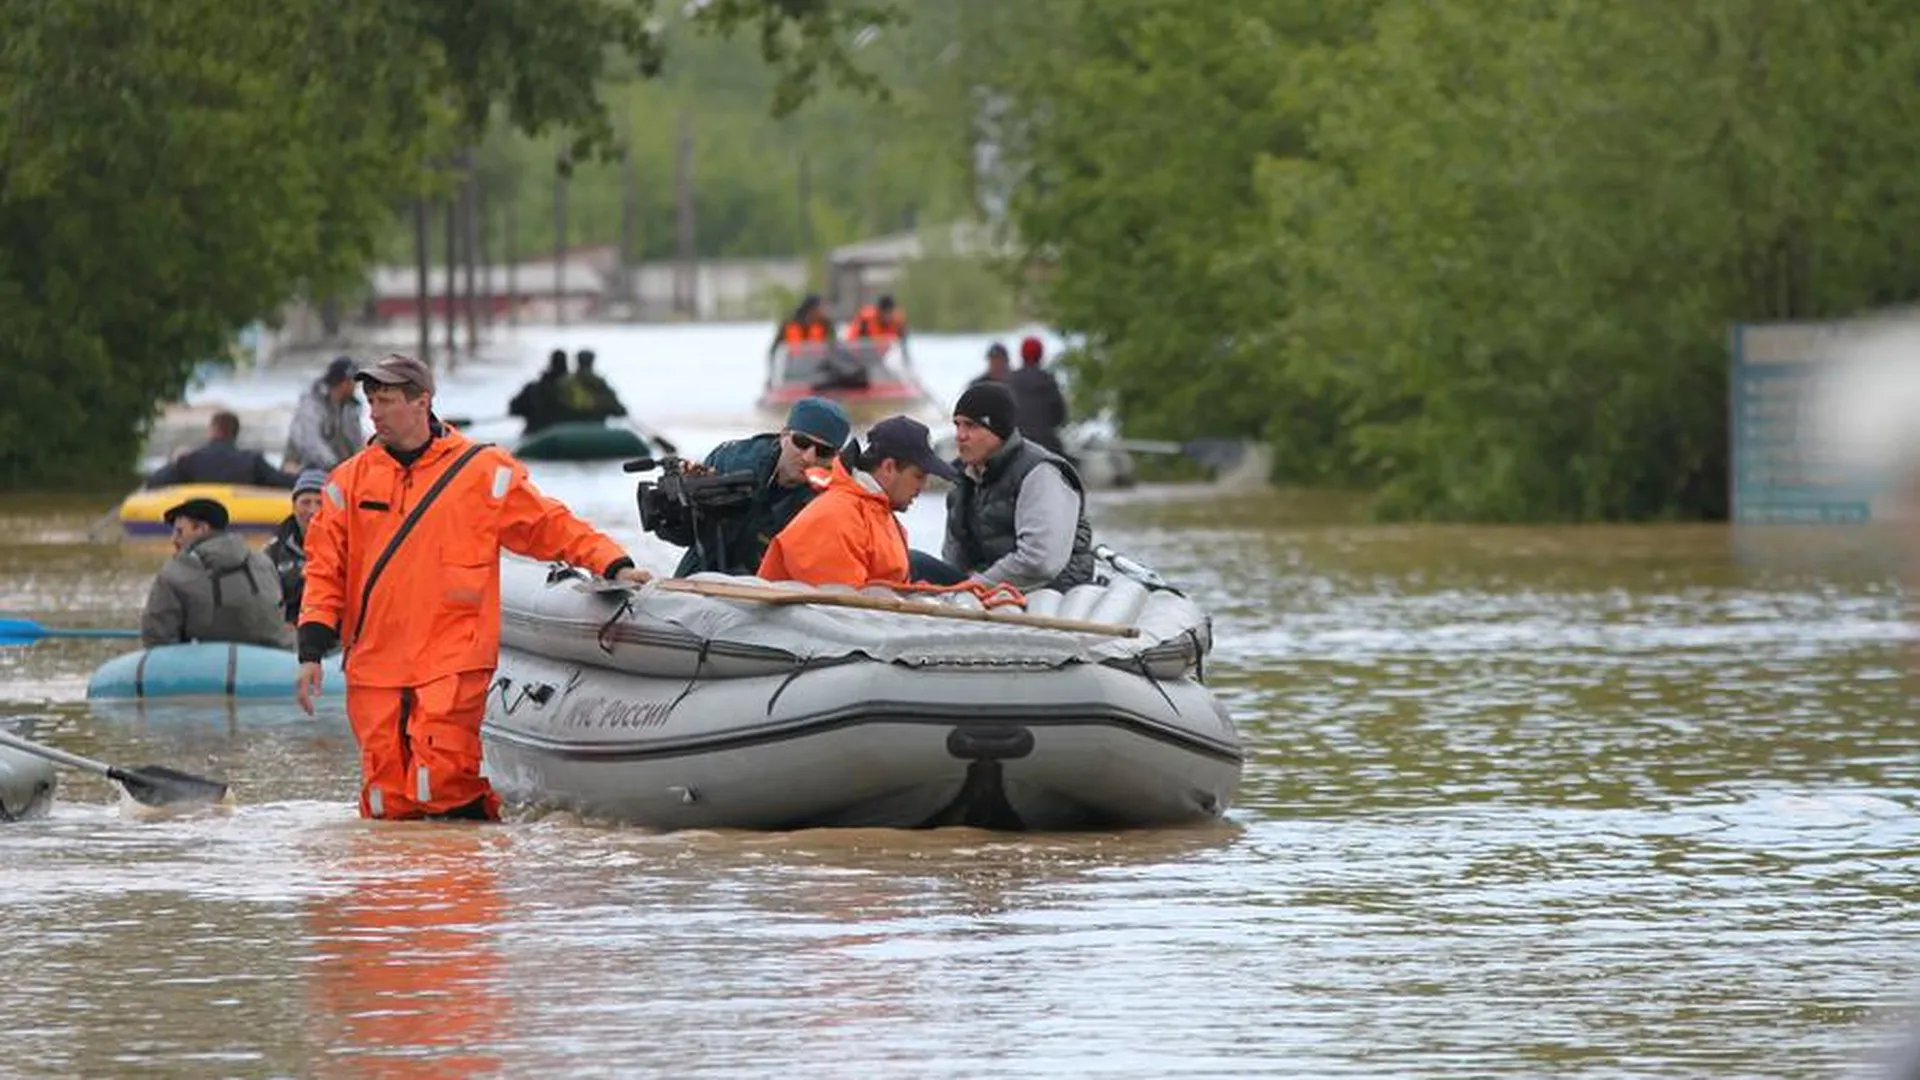 МЧС эвакуирует жителей из затопленного района в Орске. ВИДЕО